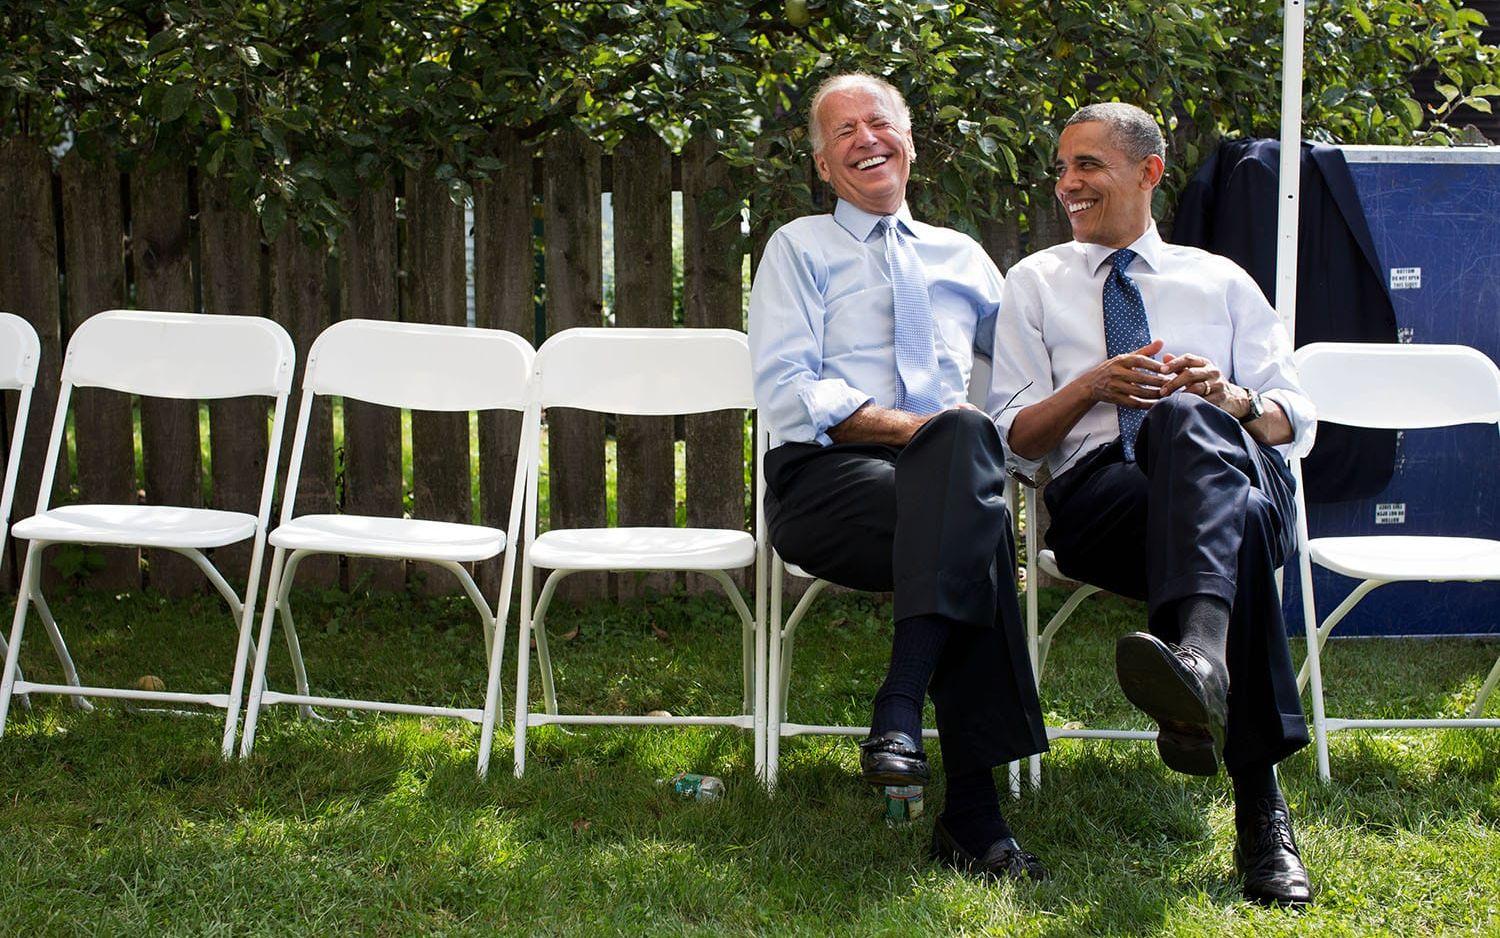 7 september, 2012: Vicepresidenten Joe Biden och Barack Obama skrattar tillsammans under valkampanjen.  Foto: Pete Souza / Vita Huset